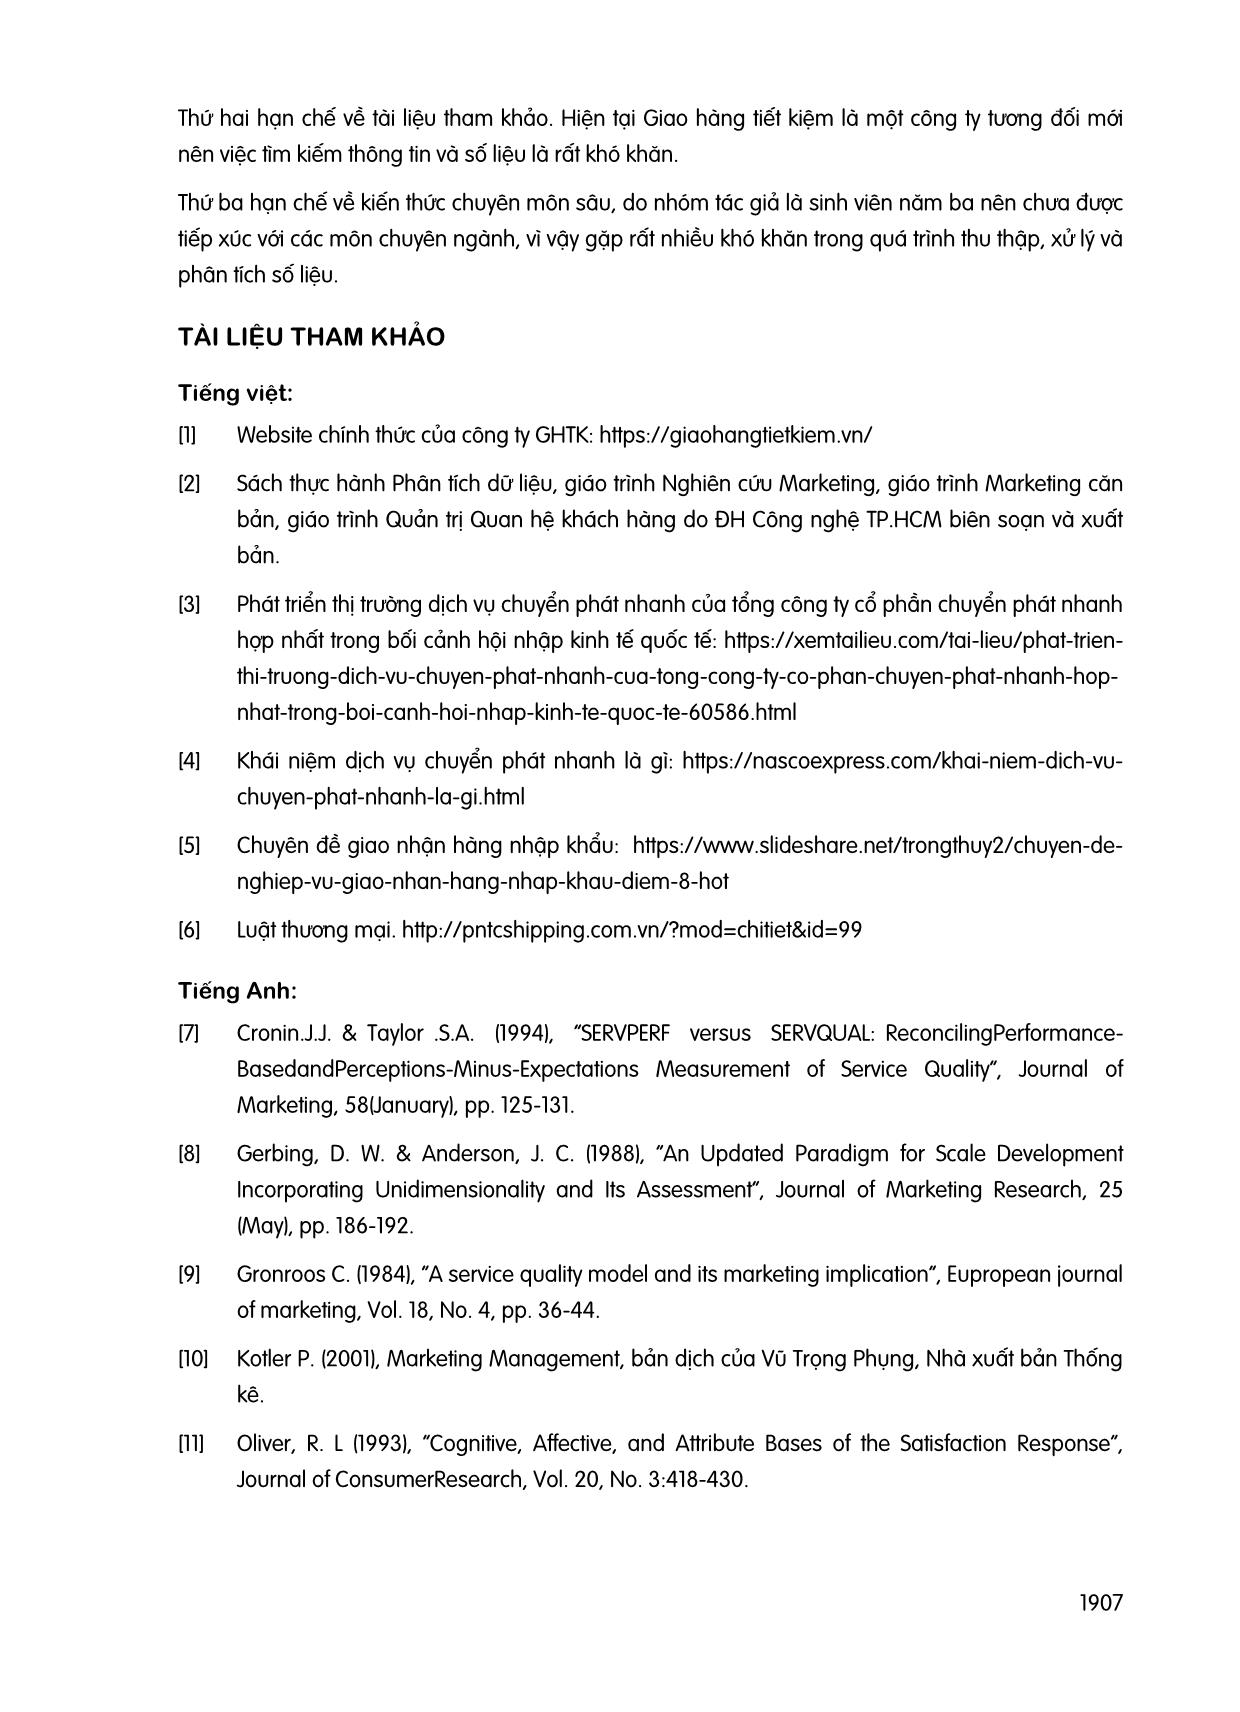 Nghiên cứu sự hài lòng của khách hàng khi sử dụng dịch vụ giao nhận hàng của Công ty Cổ phần Giao hàng Tiết kiệm khu vực thành phố Hồ Chí Minh trang 7